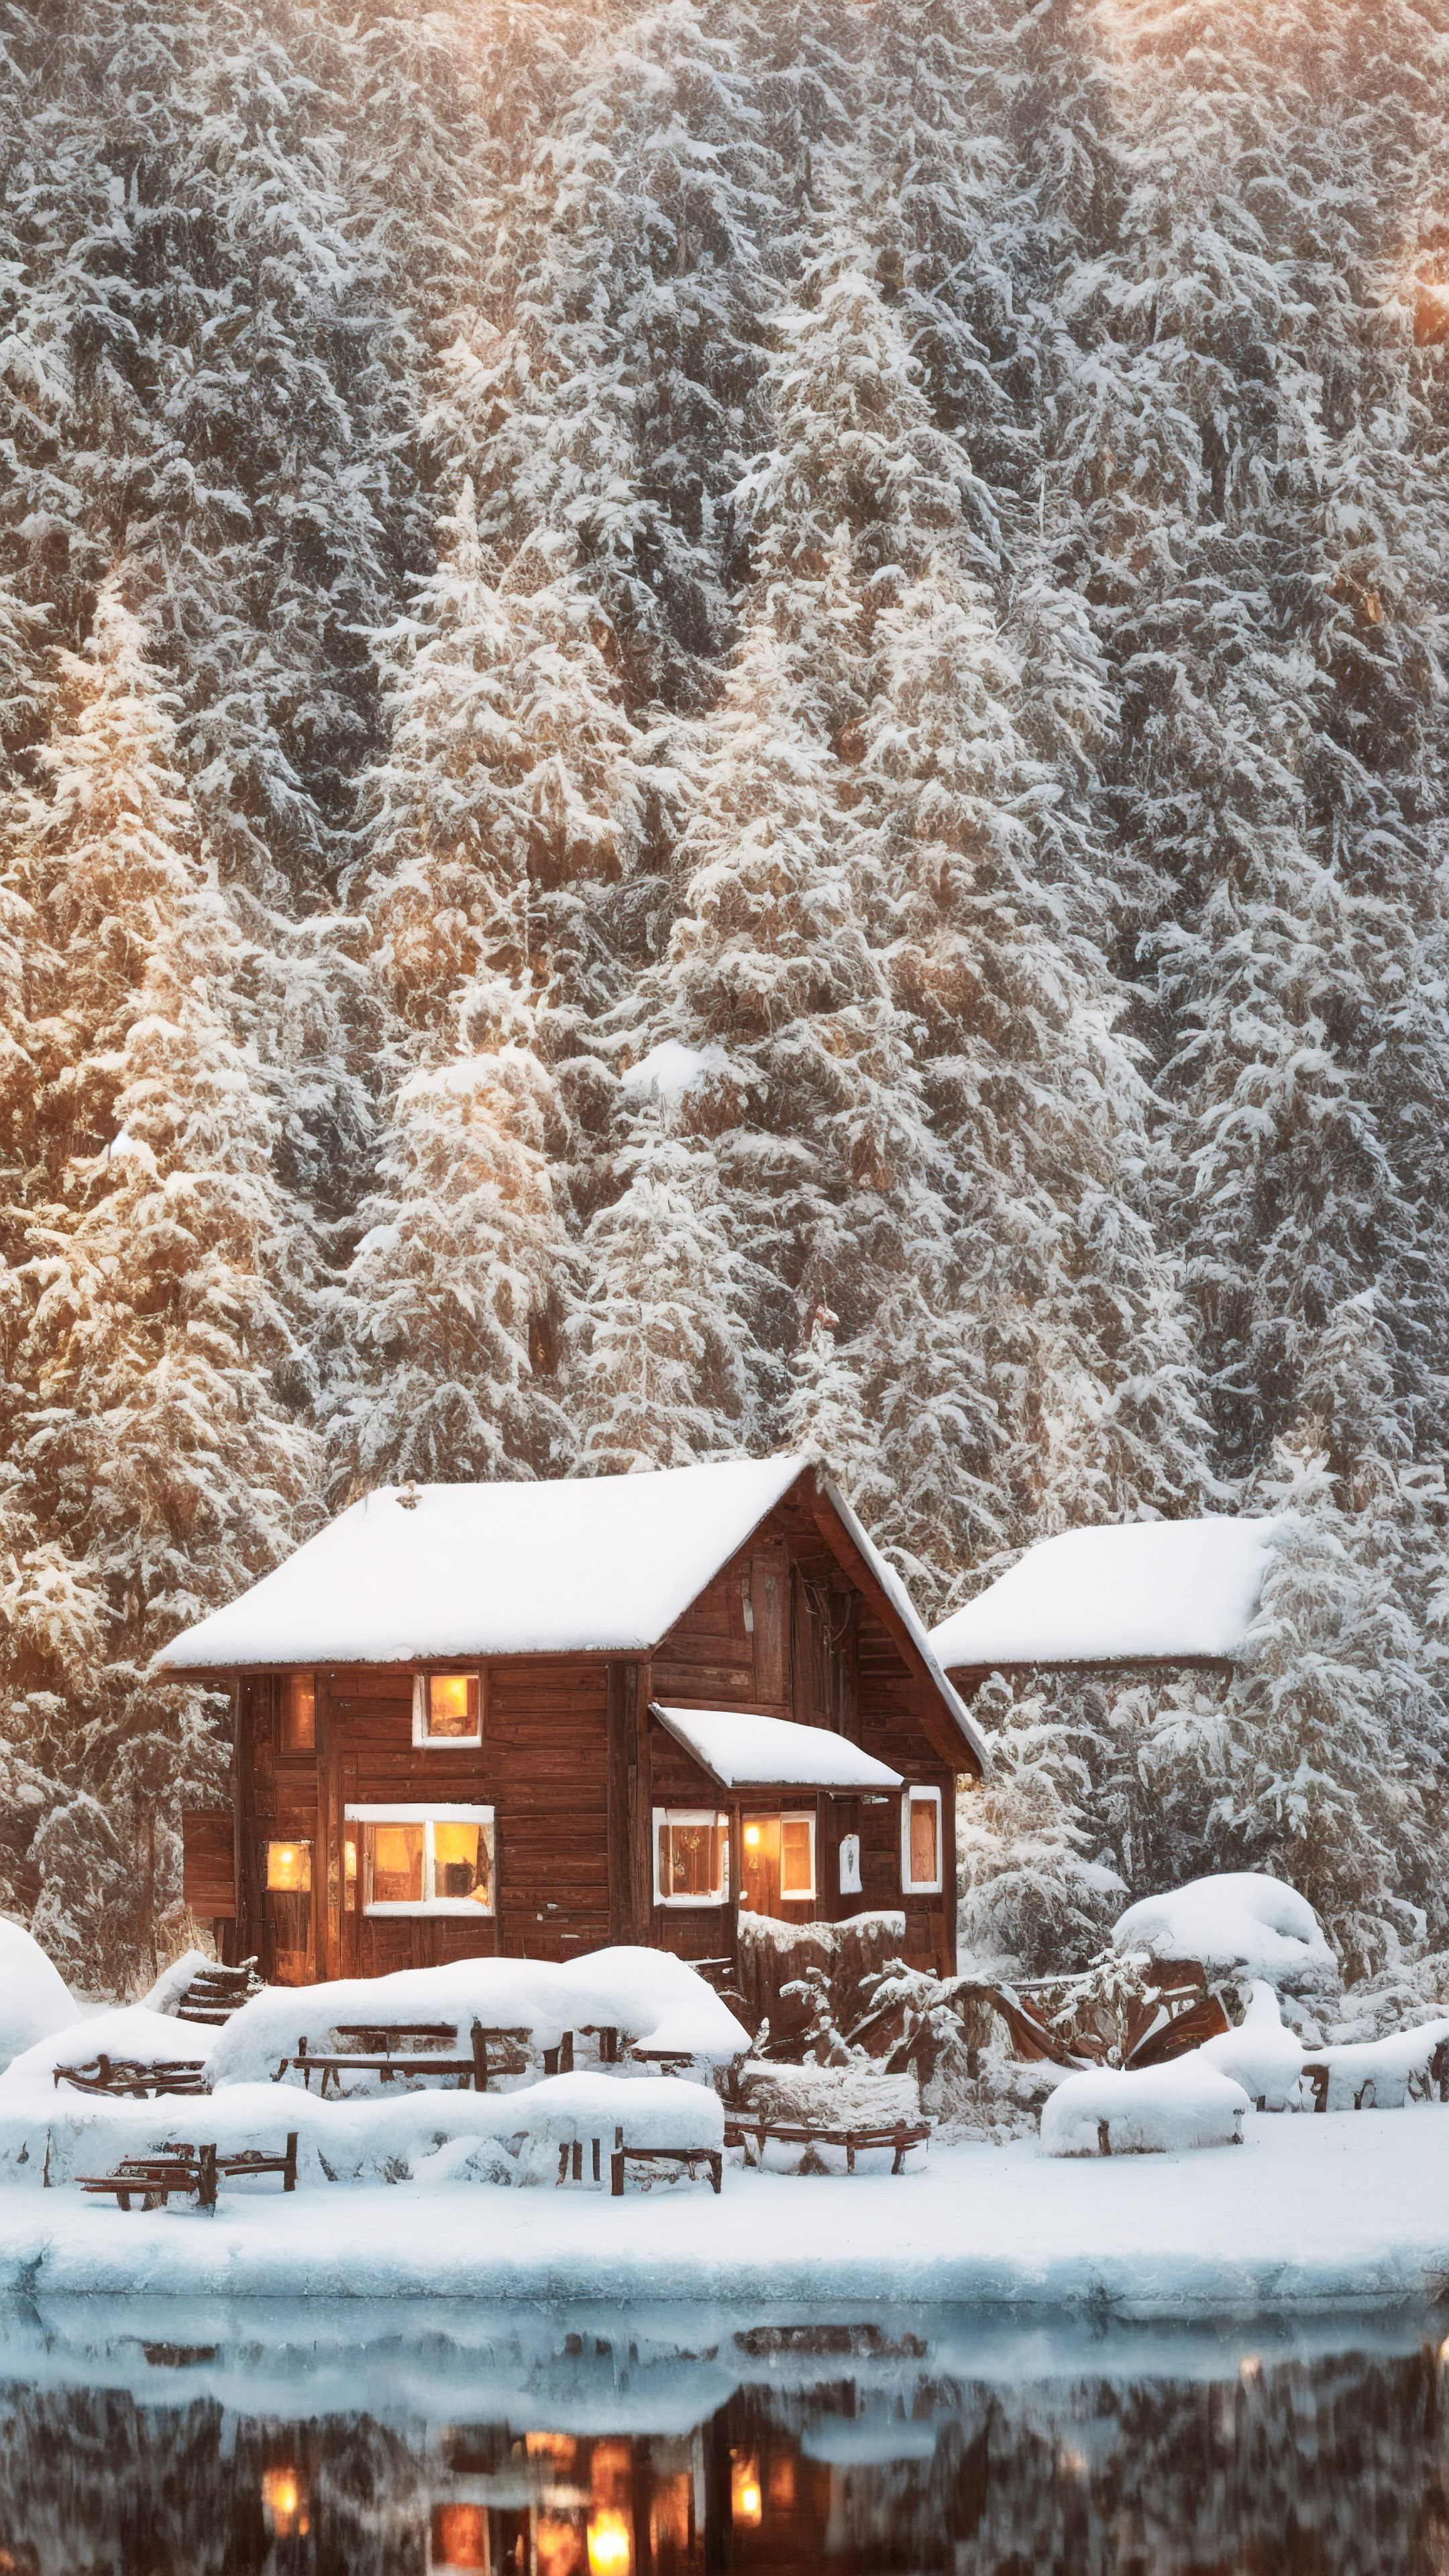 Découvrez le charme de l'hiver avec notre fond d'écran de paysage pour iPhone, mettant en scène un paysage hivernal paisible avec des arbres couverts de neige et une cabane confortable ornée de lumières festives.